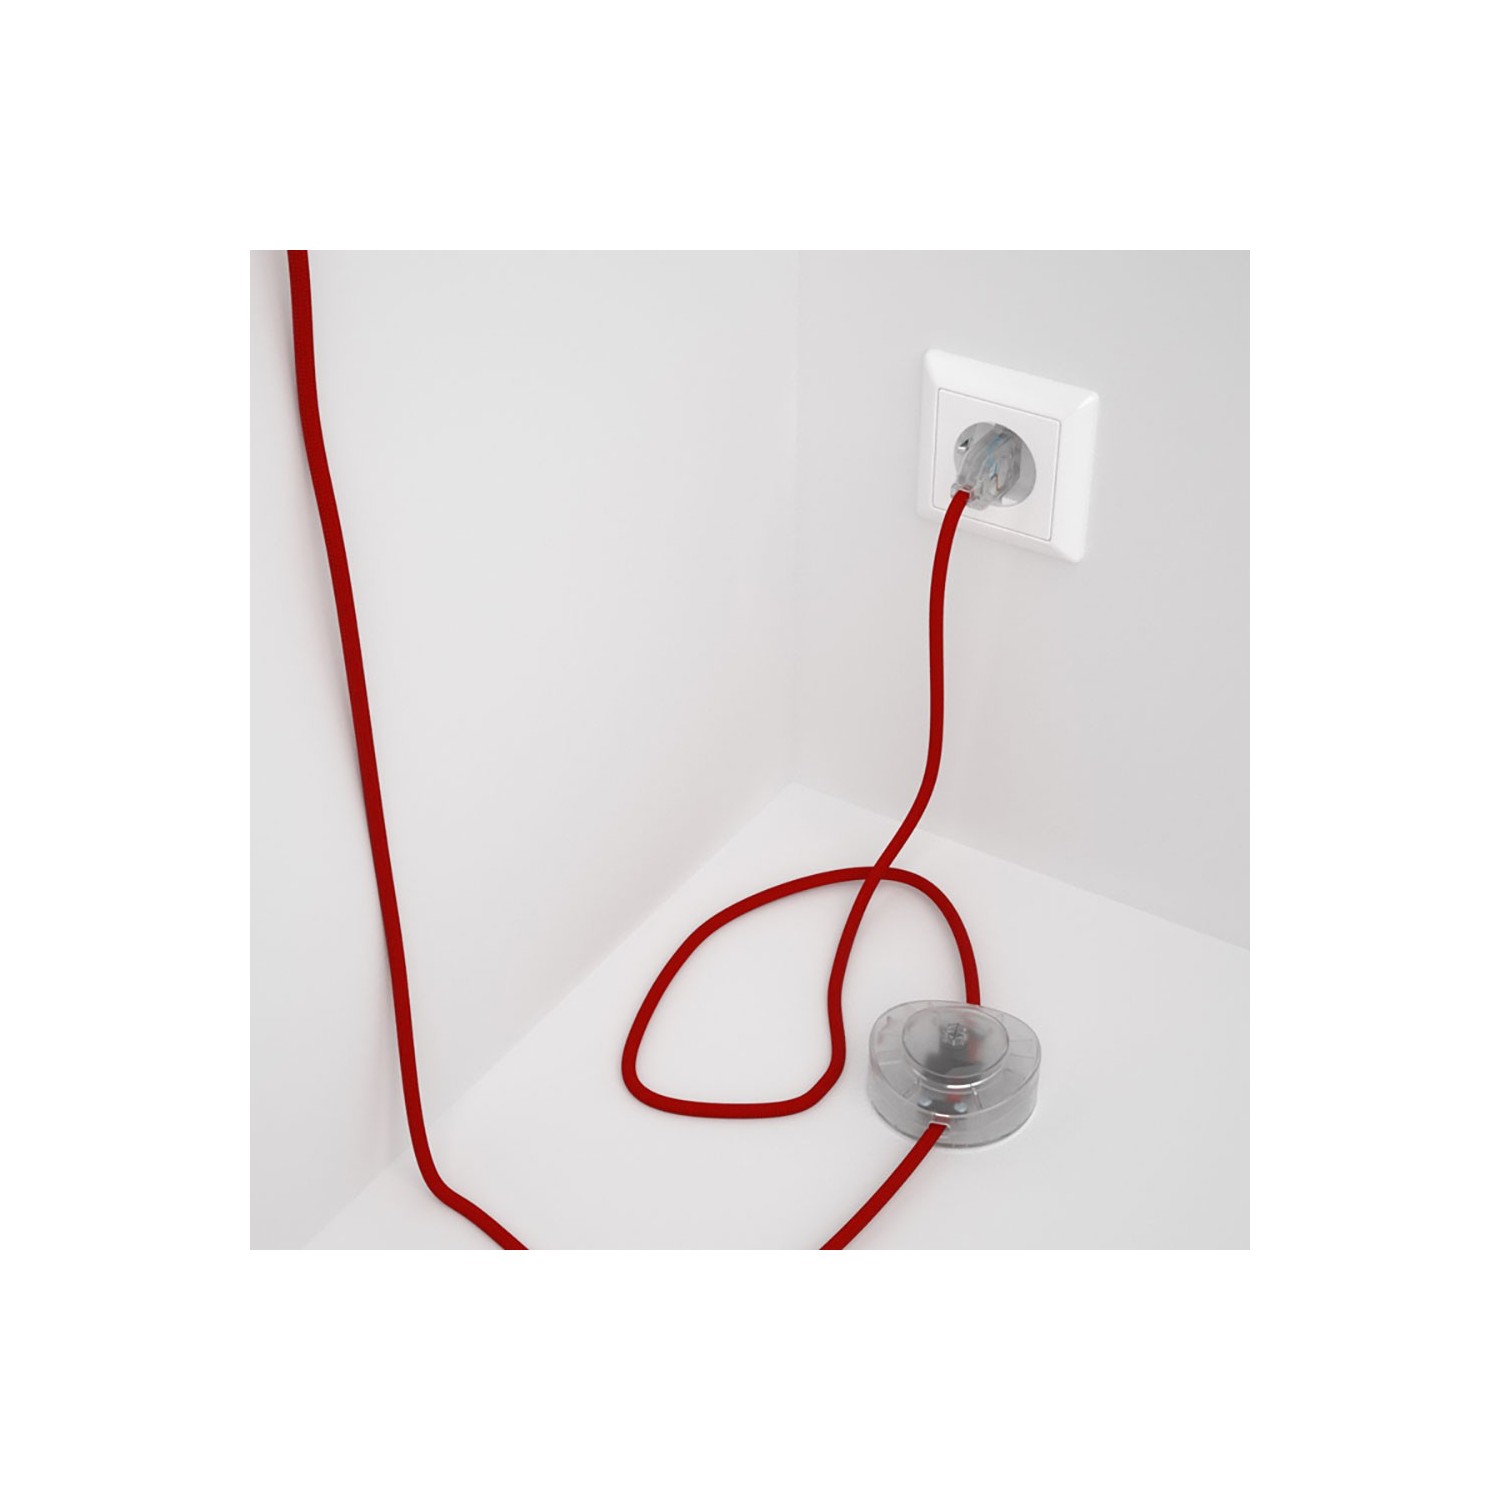 Strijkijzersnoer set RM09 rood viscose 3 m. voor staande lamp met stekker en voetschakelaar.